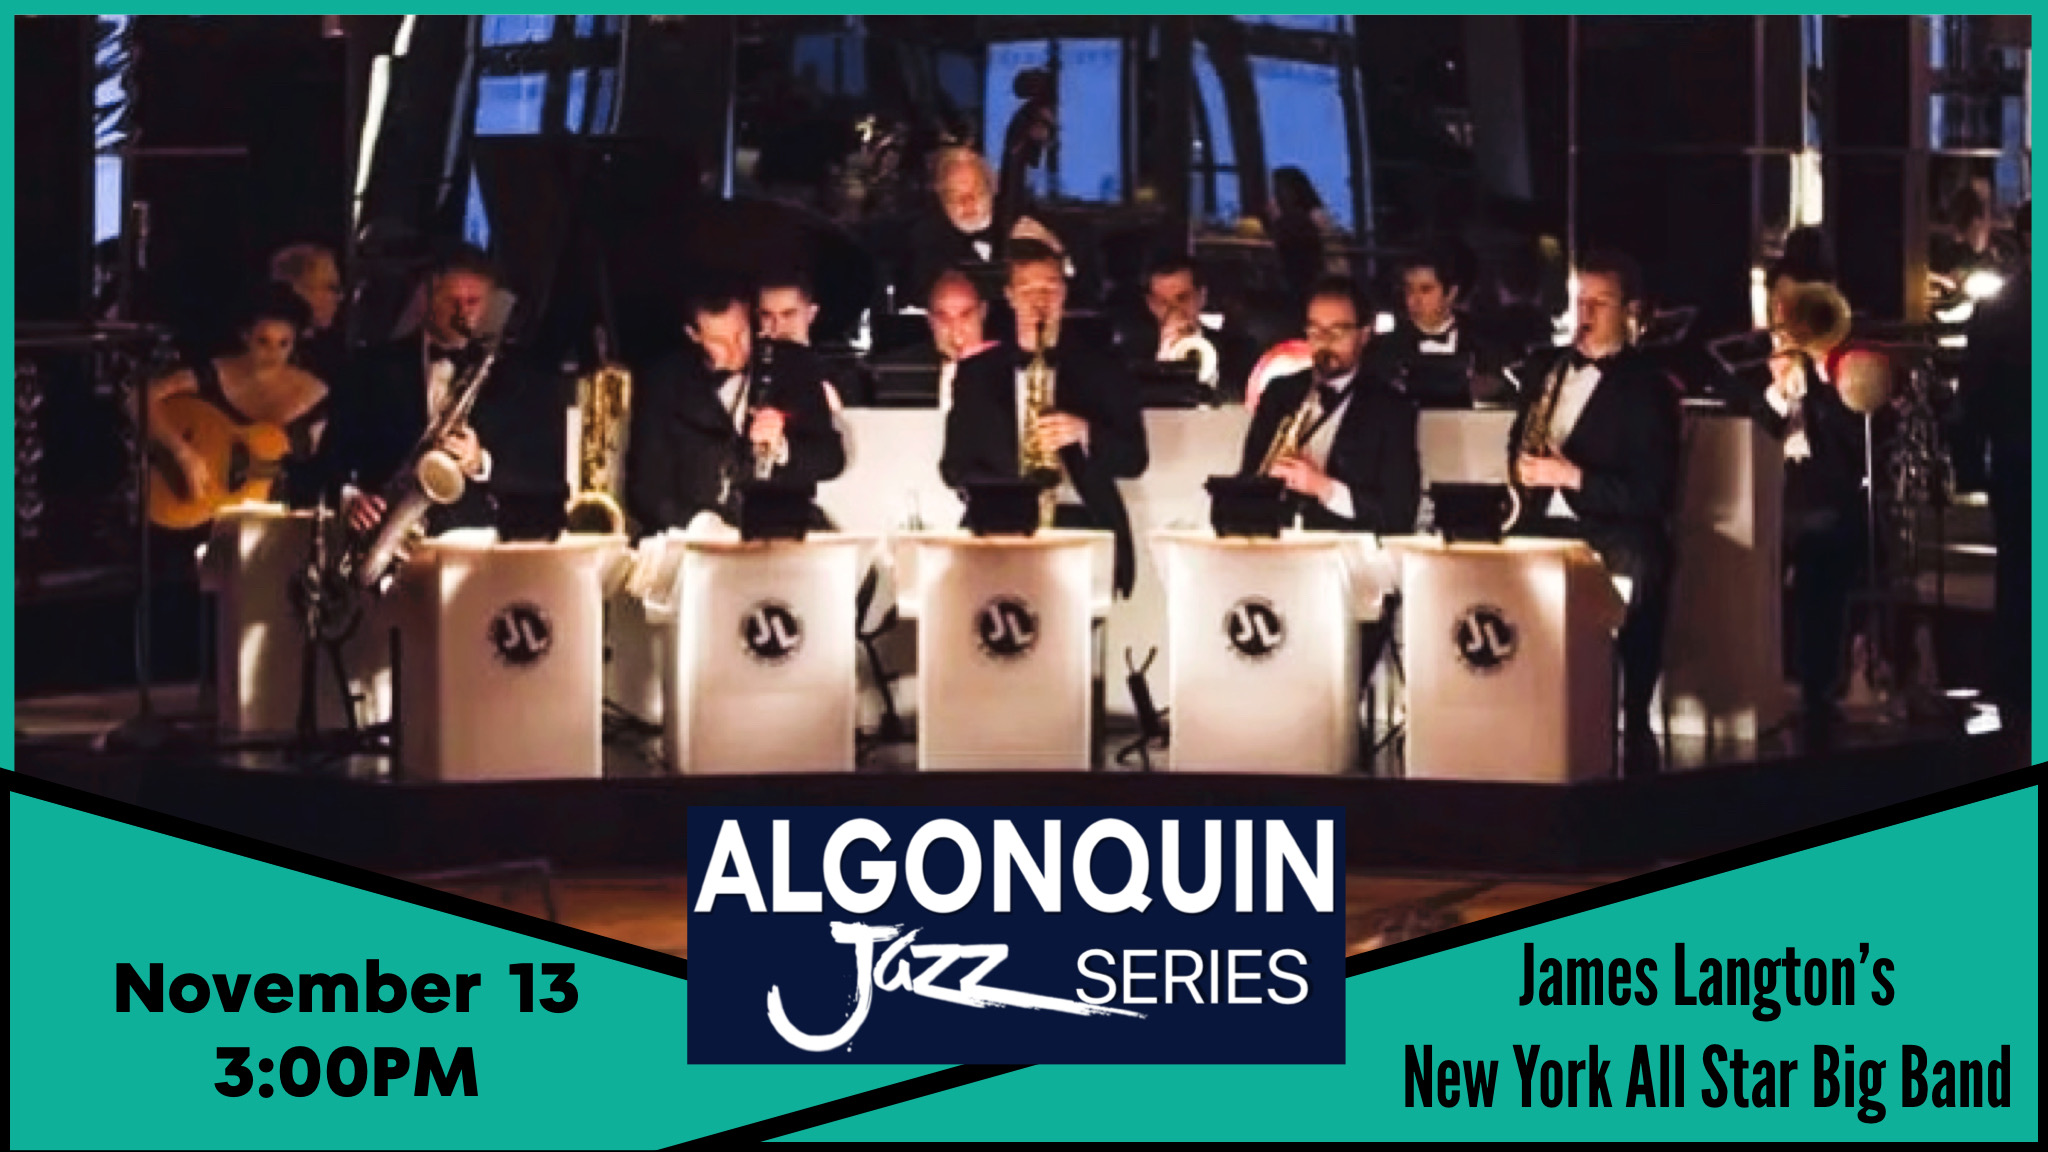 James Langton's New York All Star Big Band